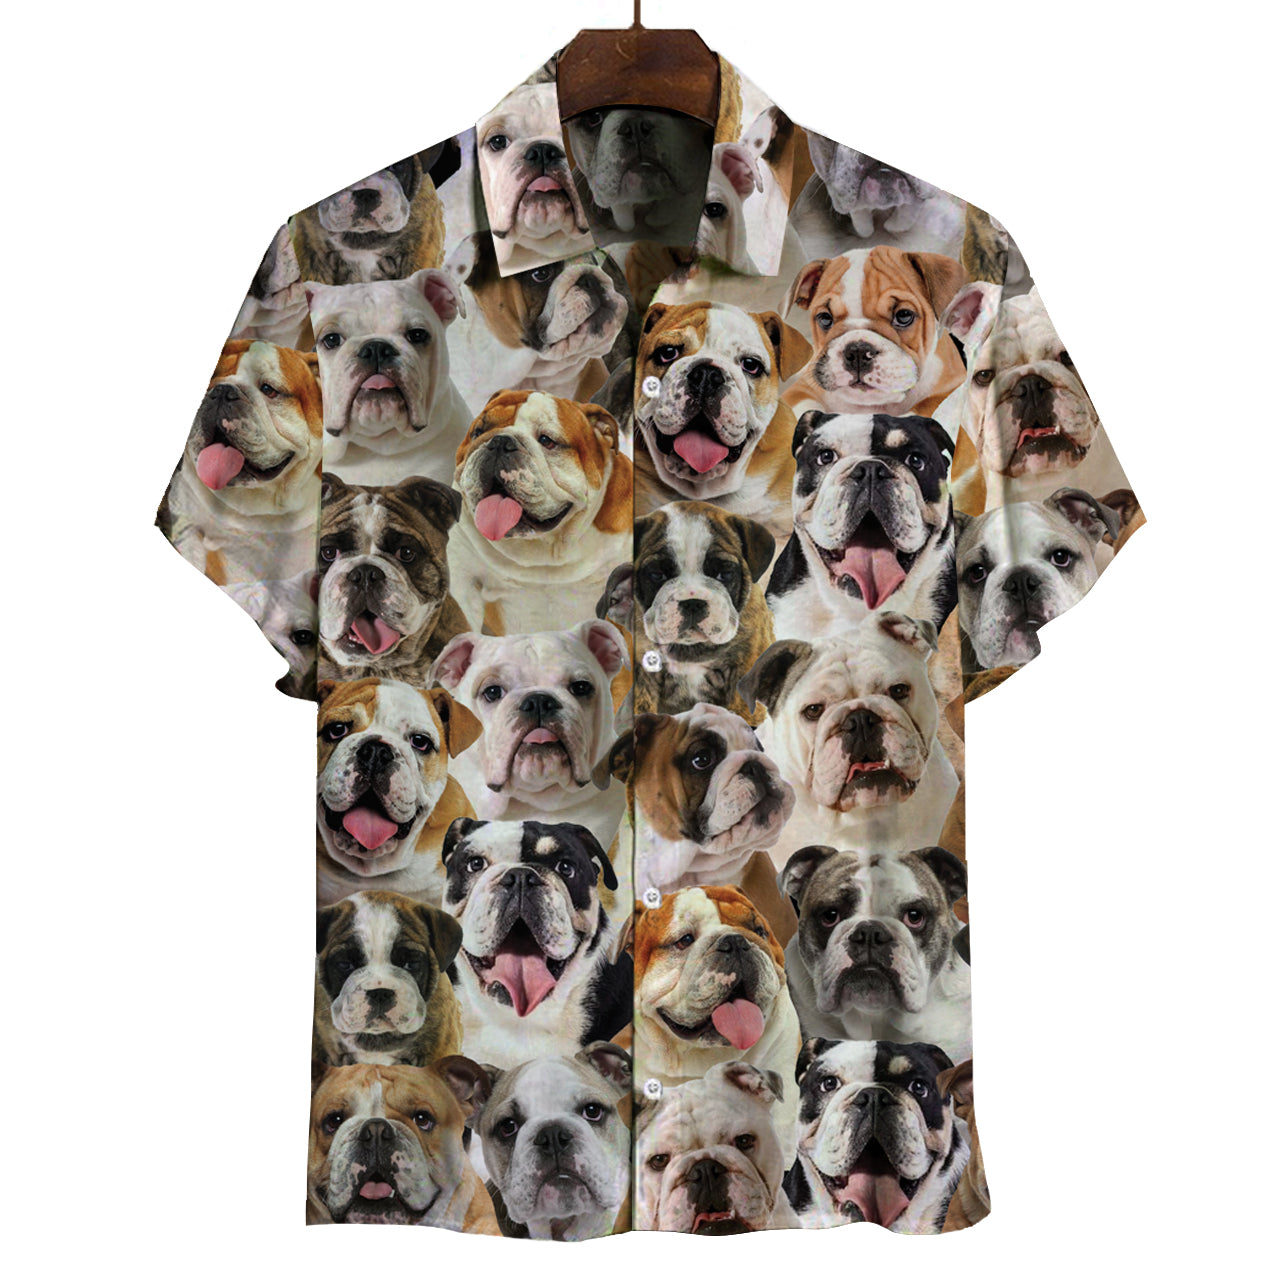 Sie werden einen Haufen englischer Bulldoggen haben - Shirt V1